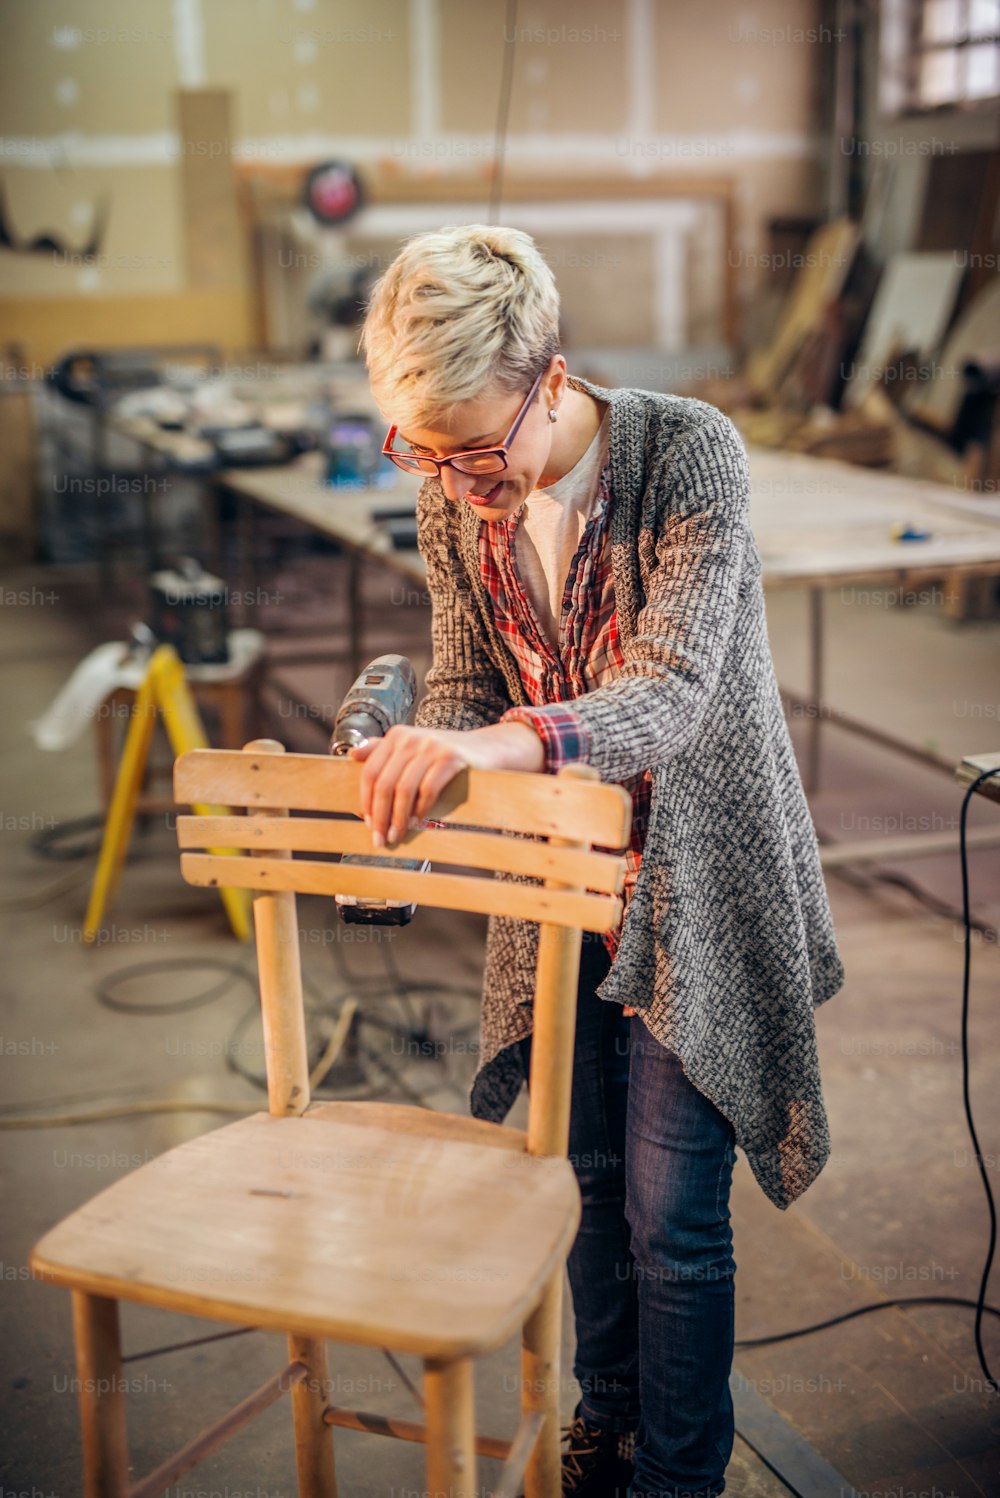 의자를 만들기 위해 드릴을 사용하는 여성 목수. 워크샵 인테리어.